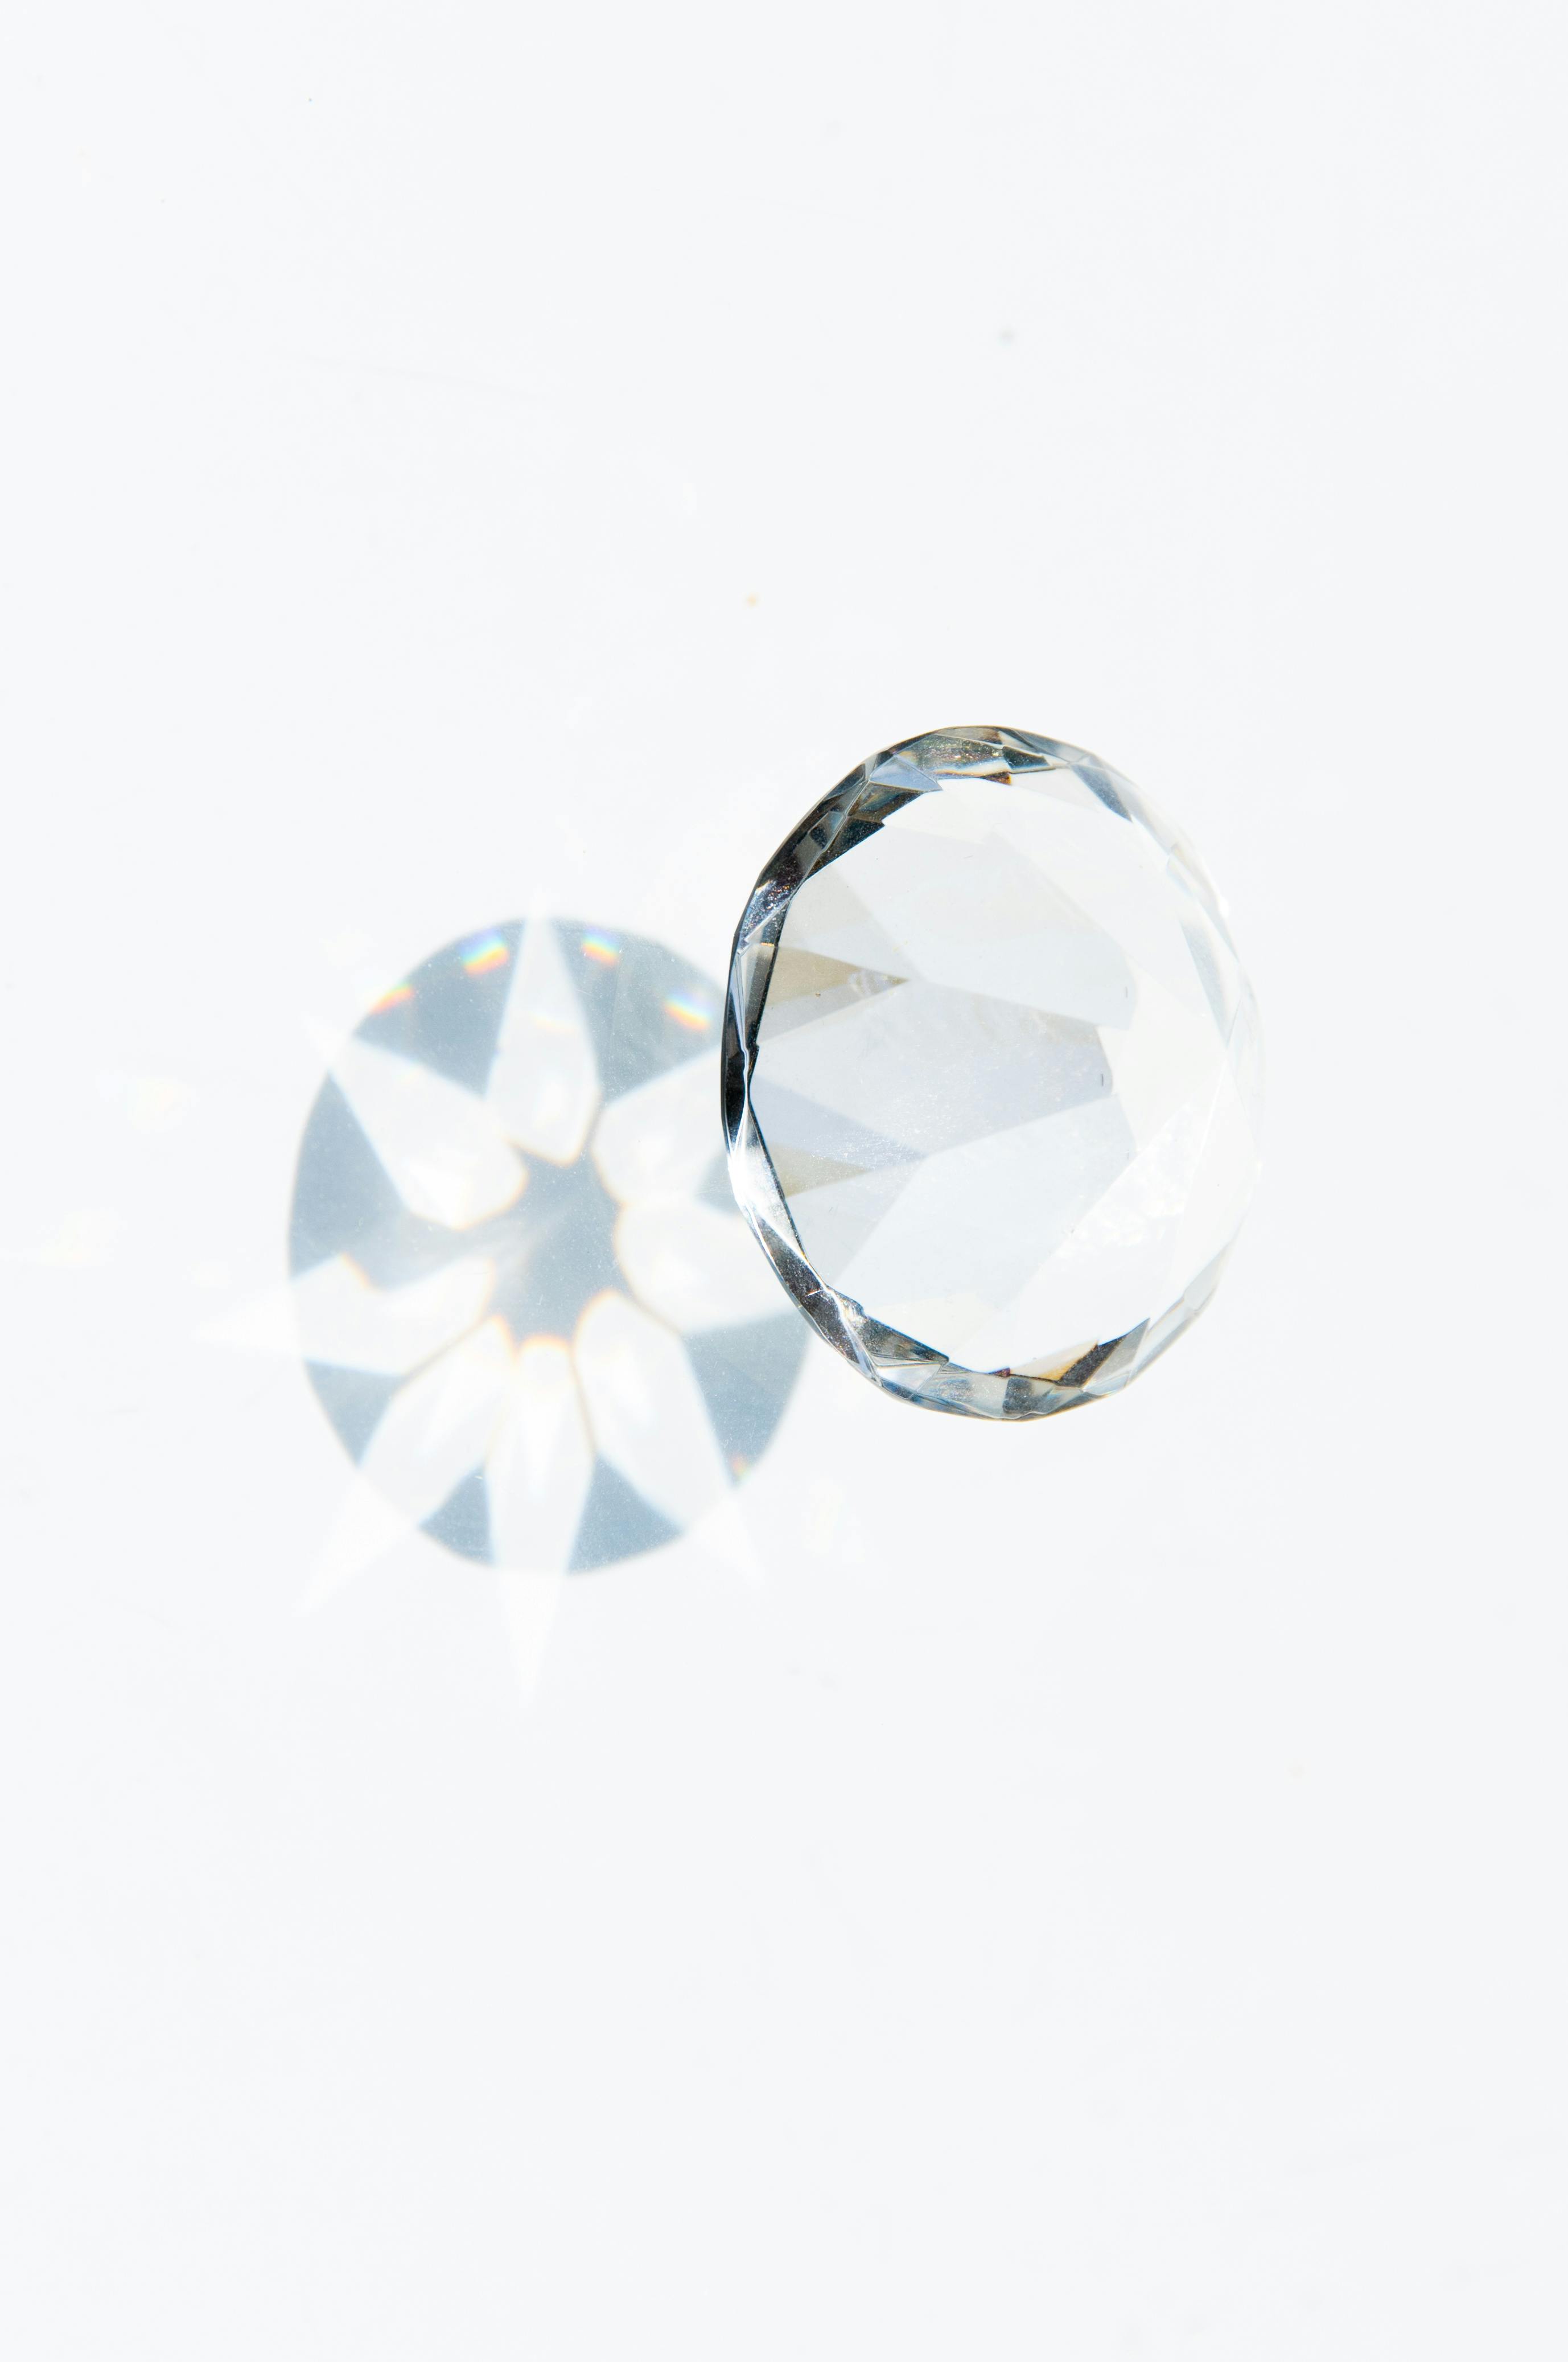 Diamantbestattung, Diamant aus Asche, Bestattung in Neustadt und Umgebung